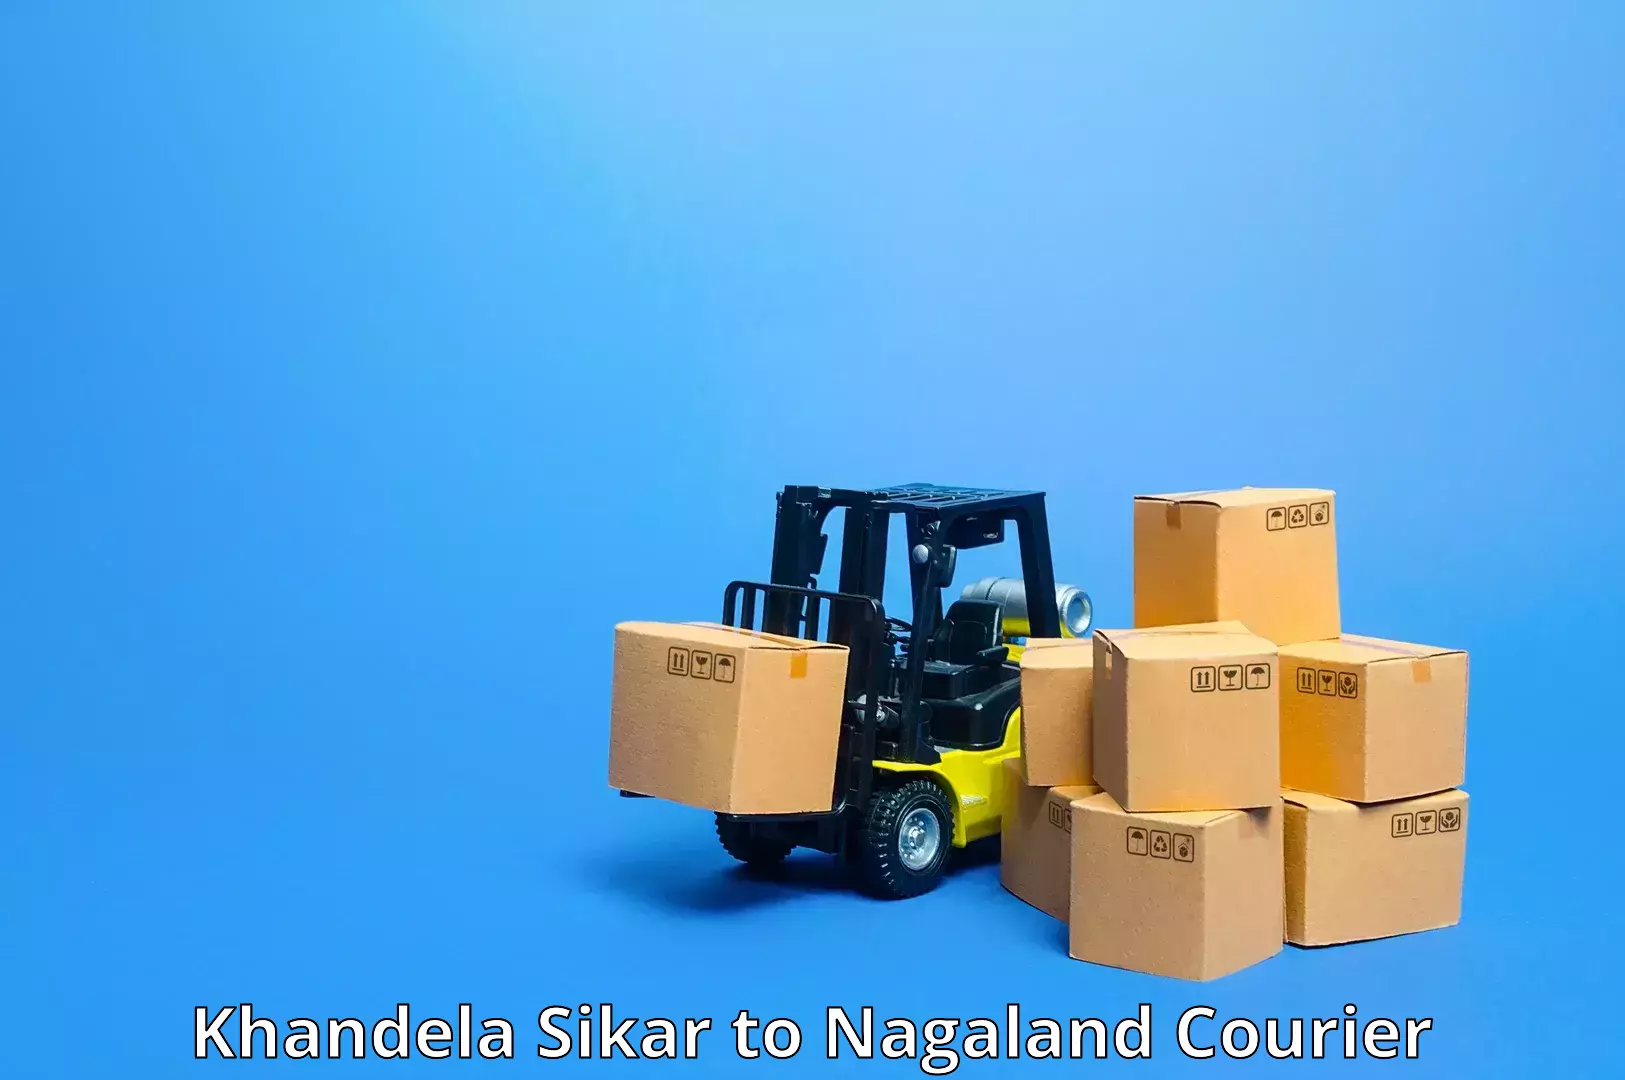 Parcel service for businesses Khandela Sikar to NIT Nagaland